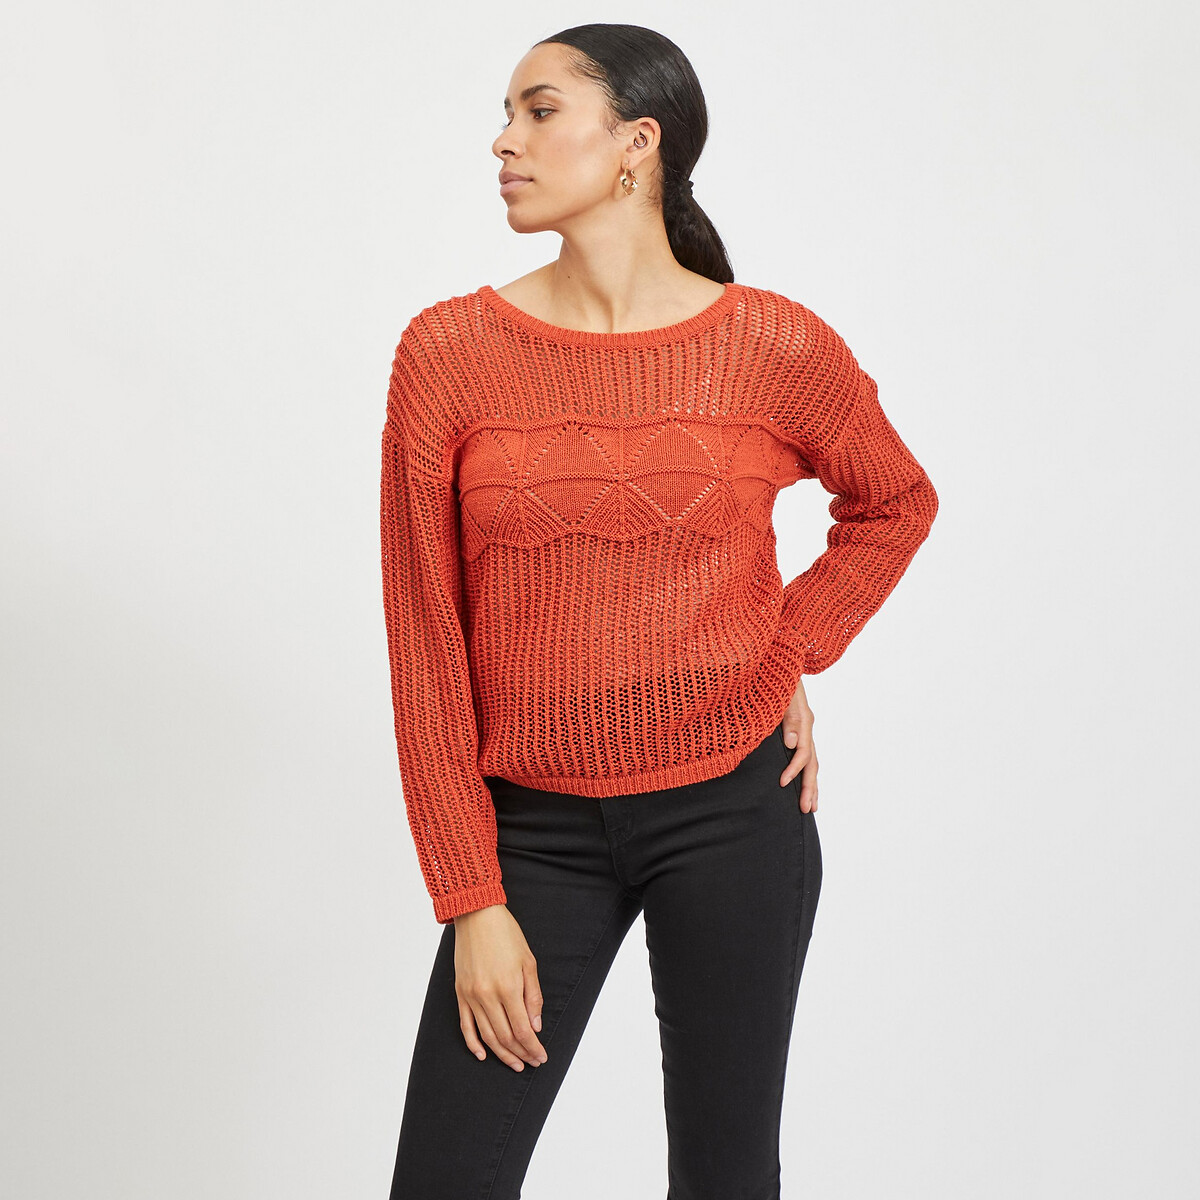 Пуловер С круглым вырезом из тонкого ажурного трикотажа XS оранжевый